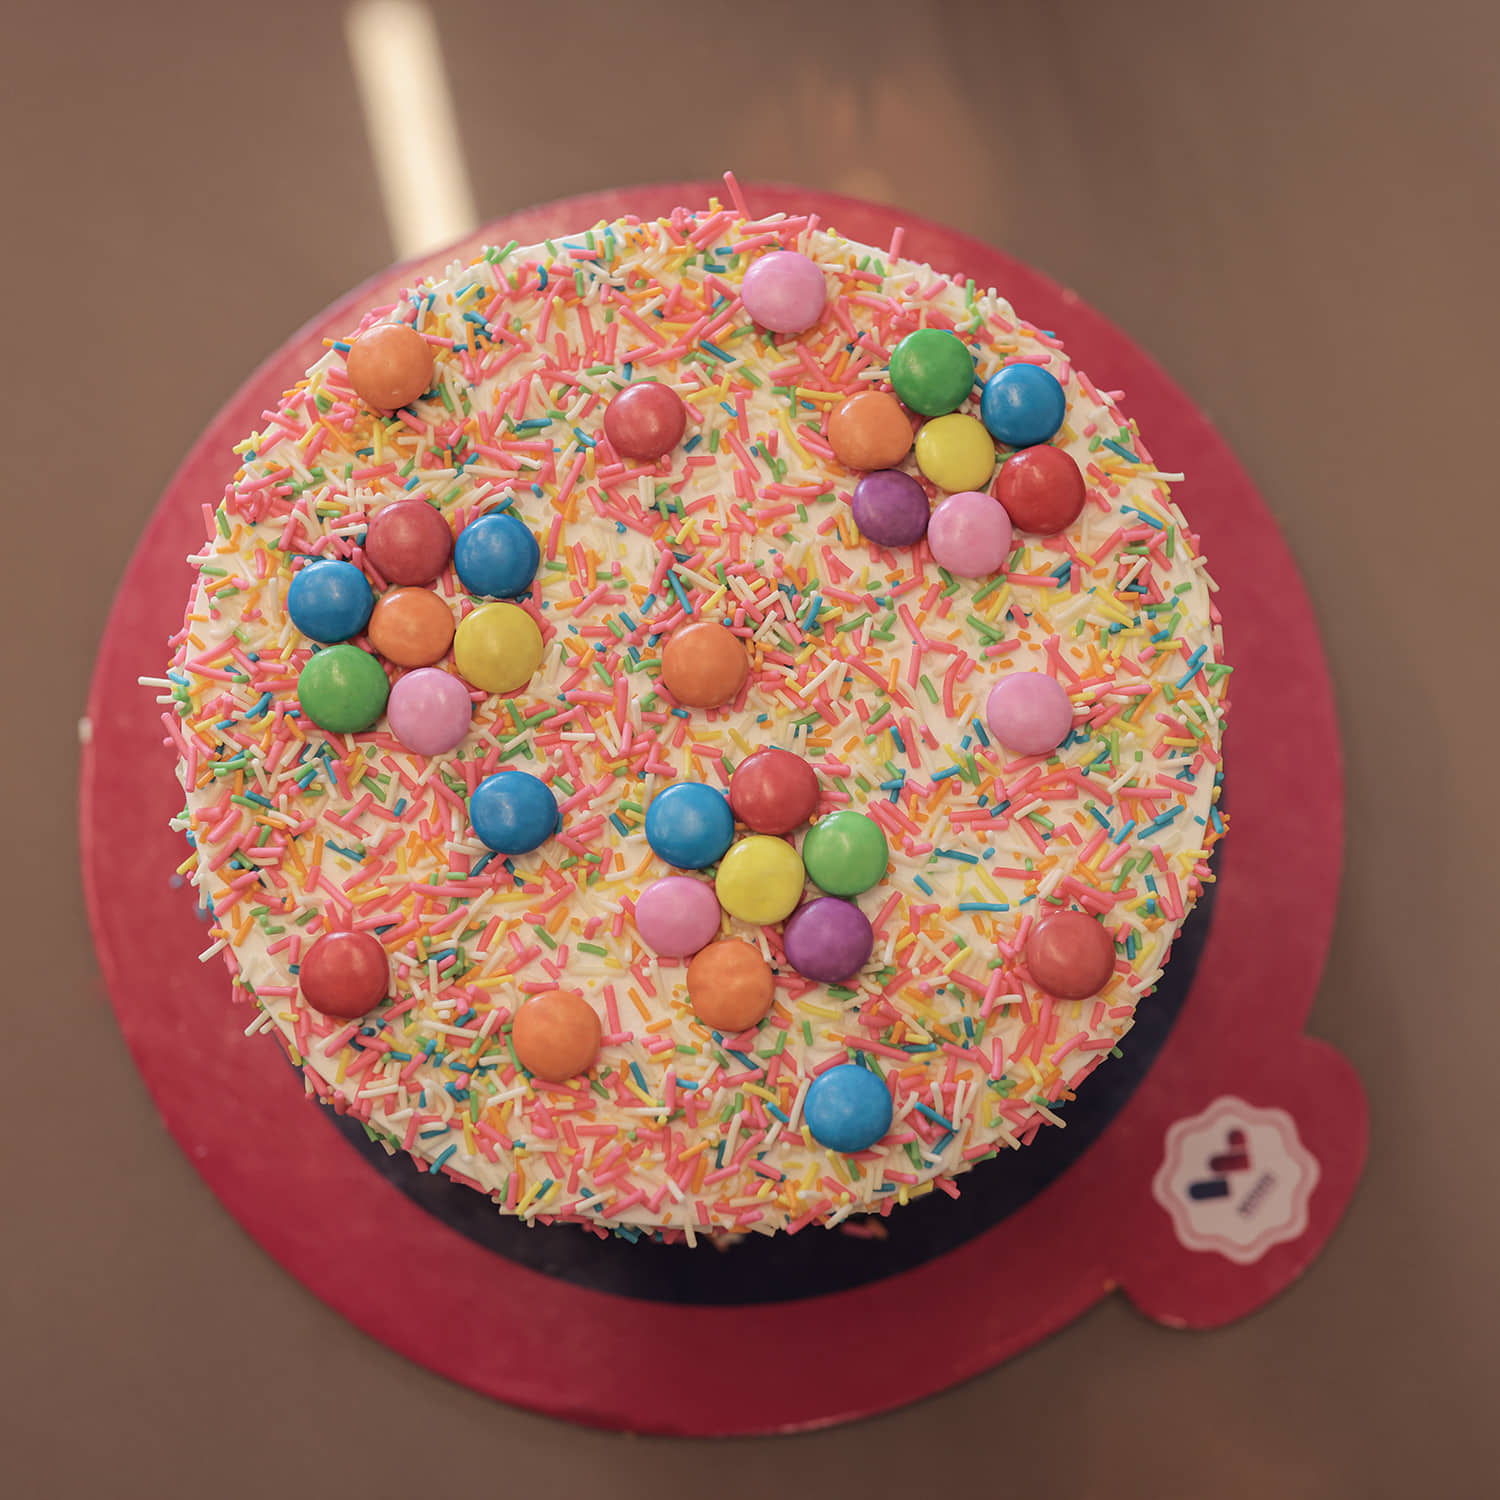 Kit Kat Gems Cake- Order Online Kit Kat Gems Cake @ Flavoursguru